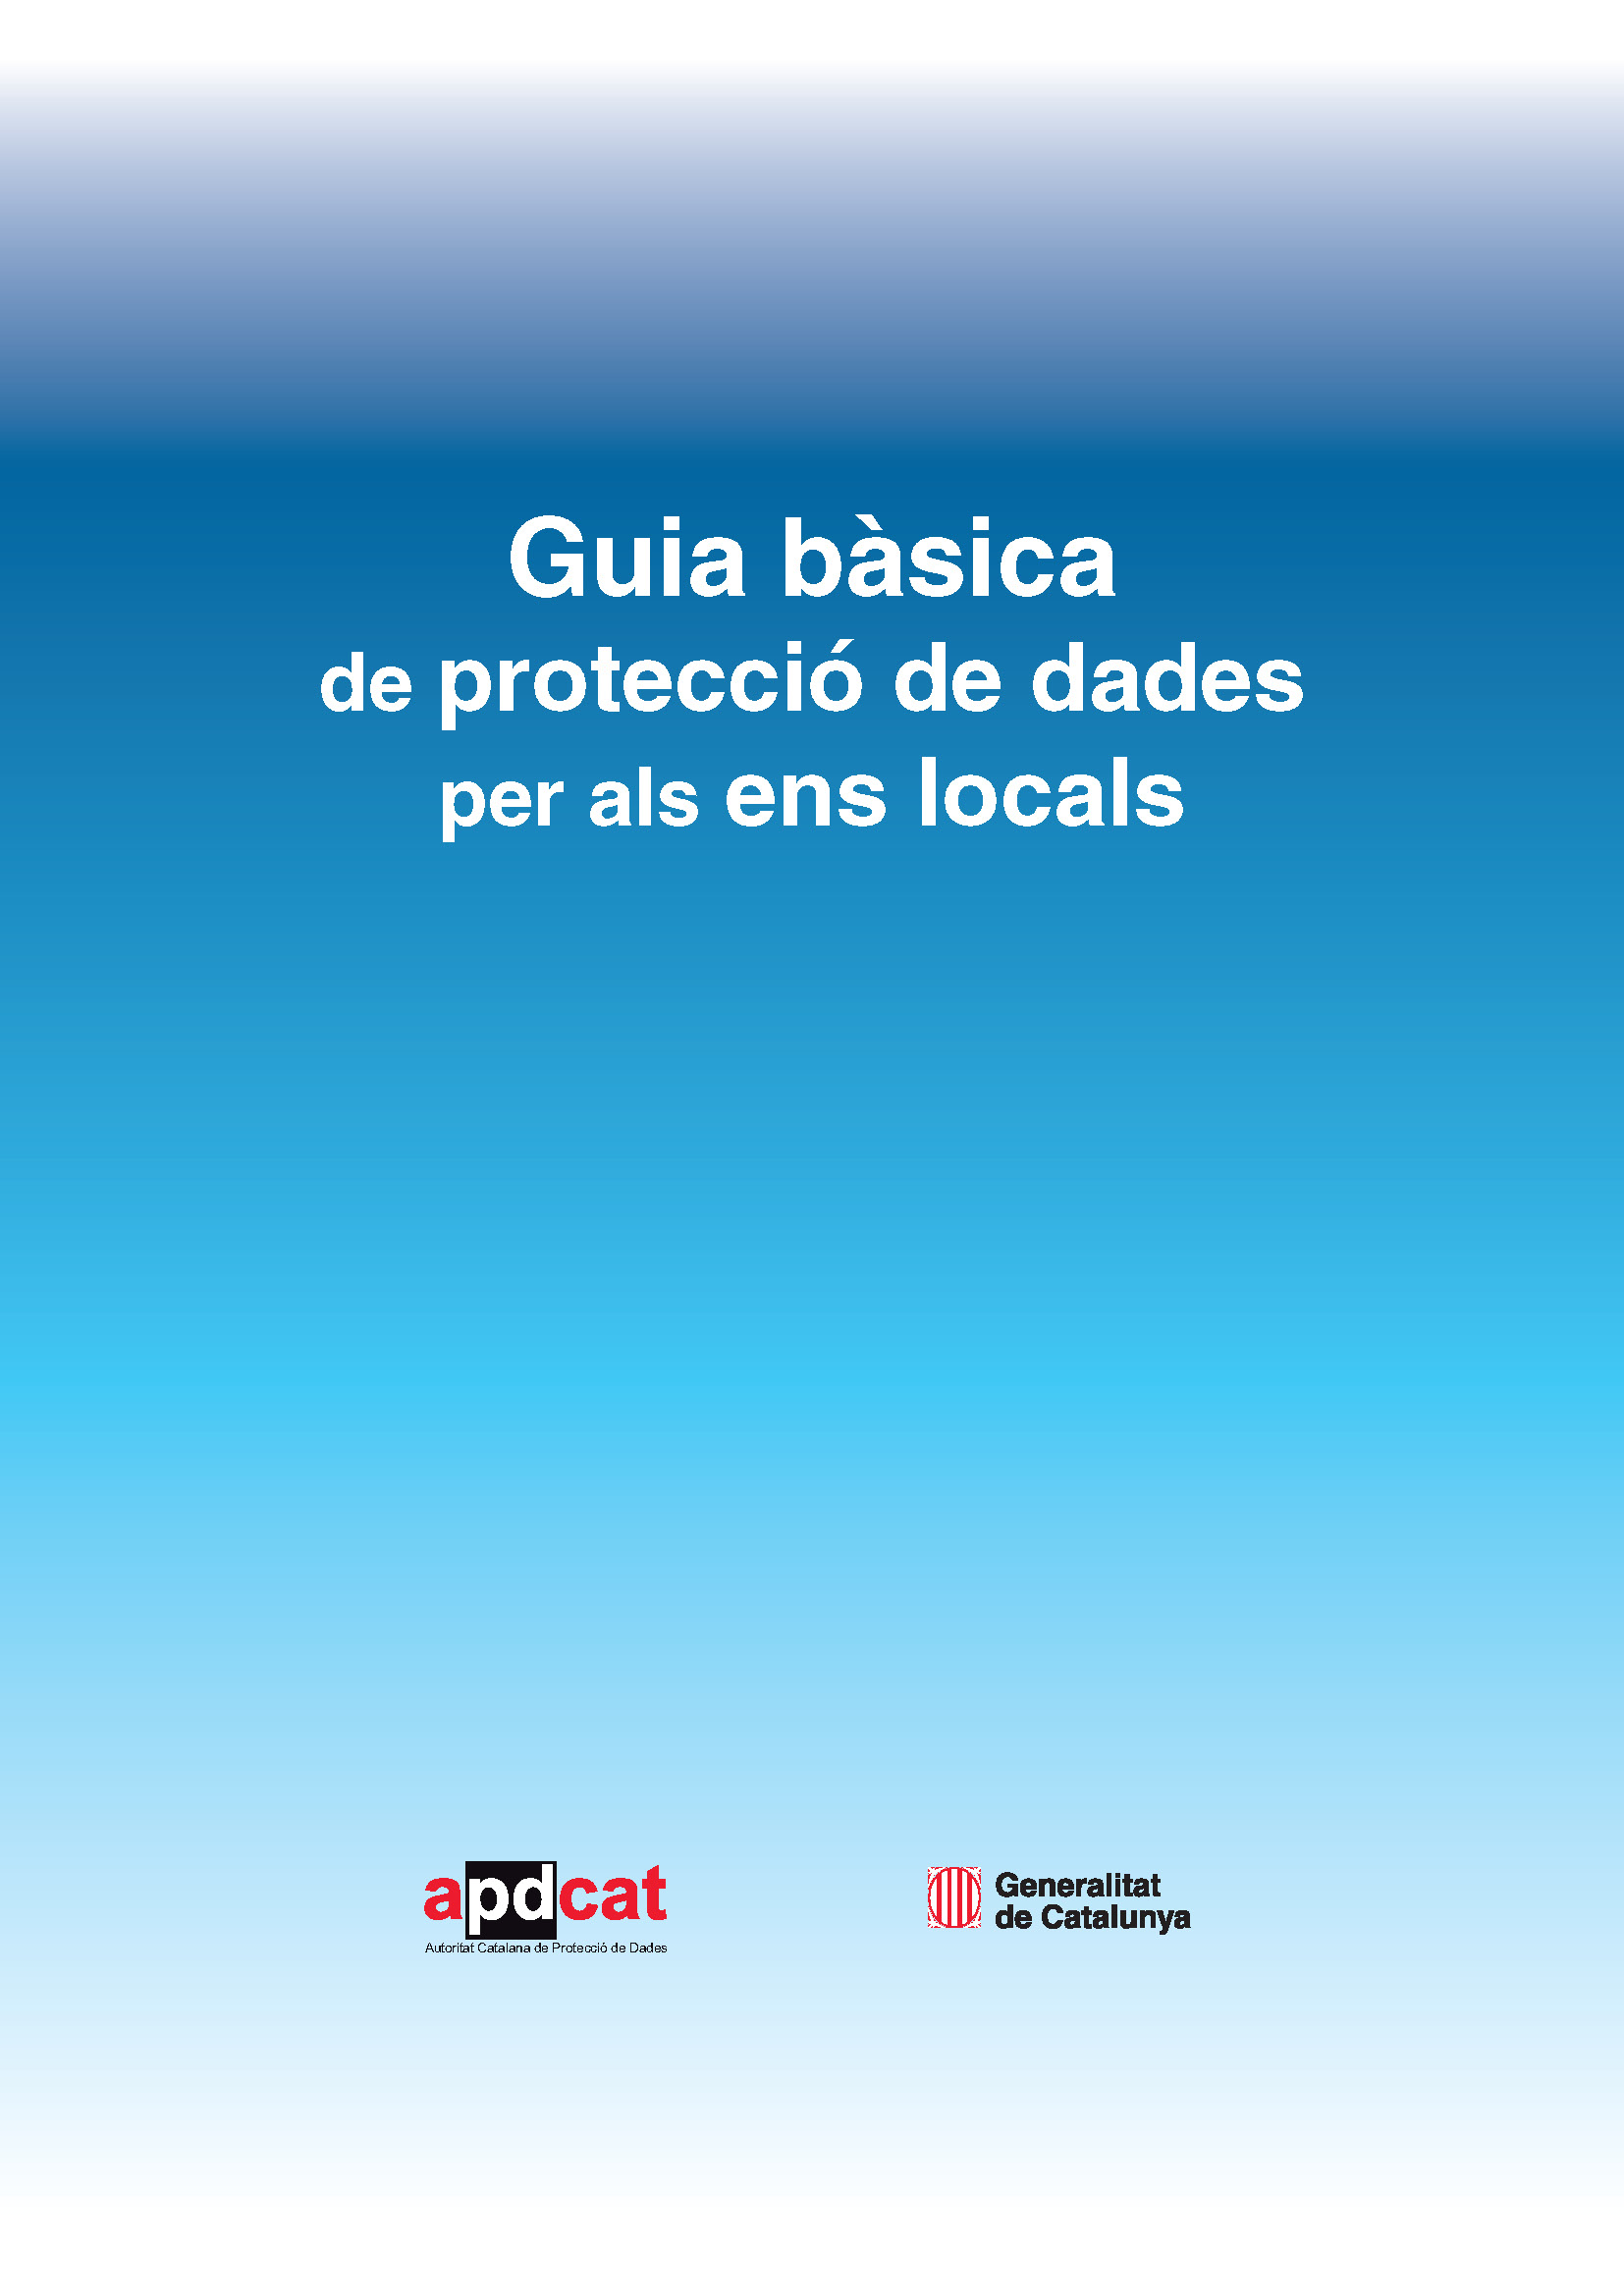 Guía básica de protección de datos para los entes locales